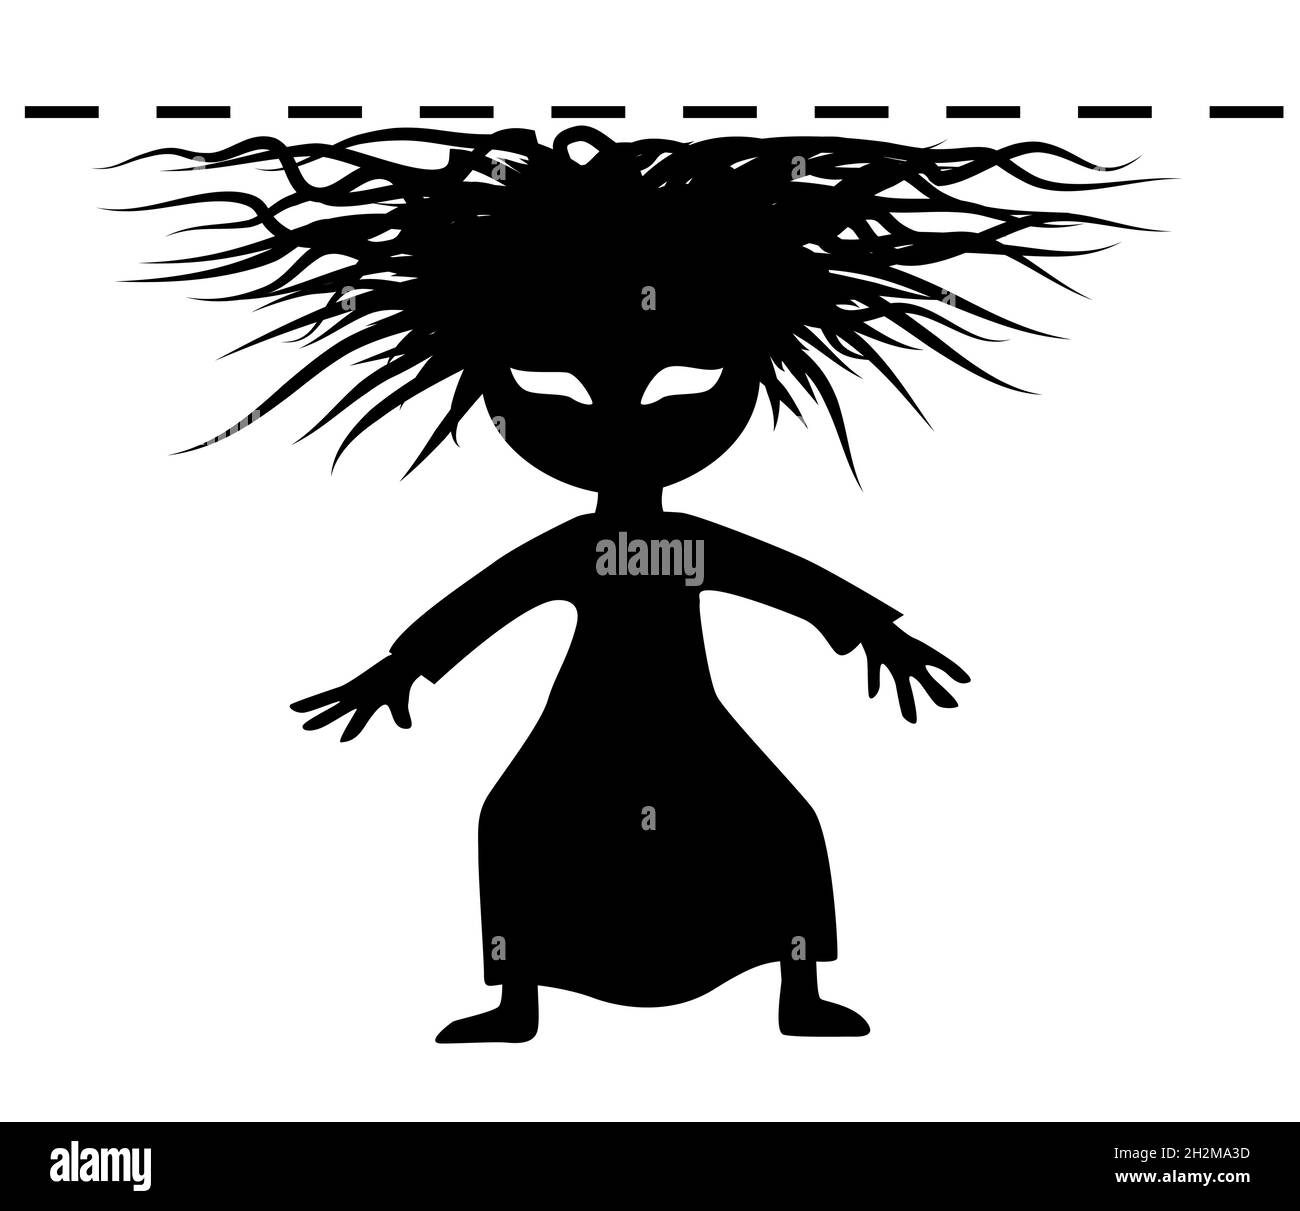 Frisur Frau schlechte Haare Figur Silhouette lustig Cartoon schwarz, treffen unsichtbare Deckenbarriere, Vektor-Illustration, horizontal, über weiß, Isolat Stock Vektor